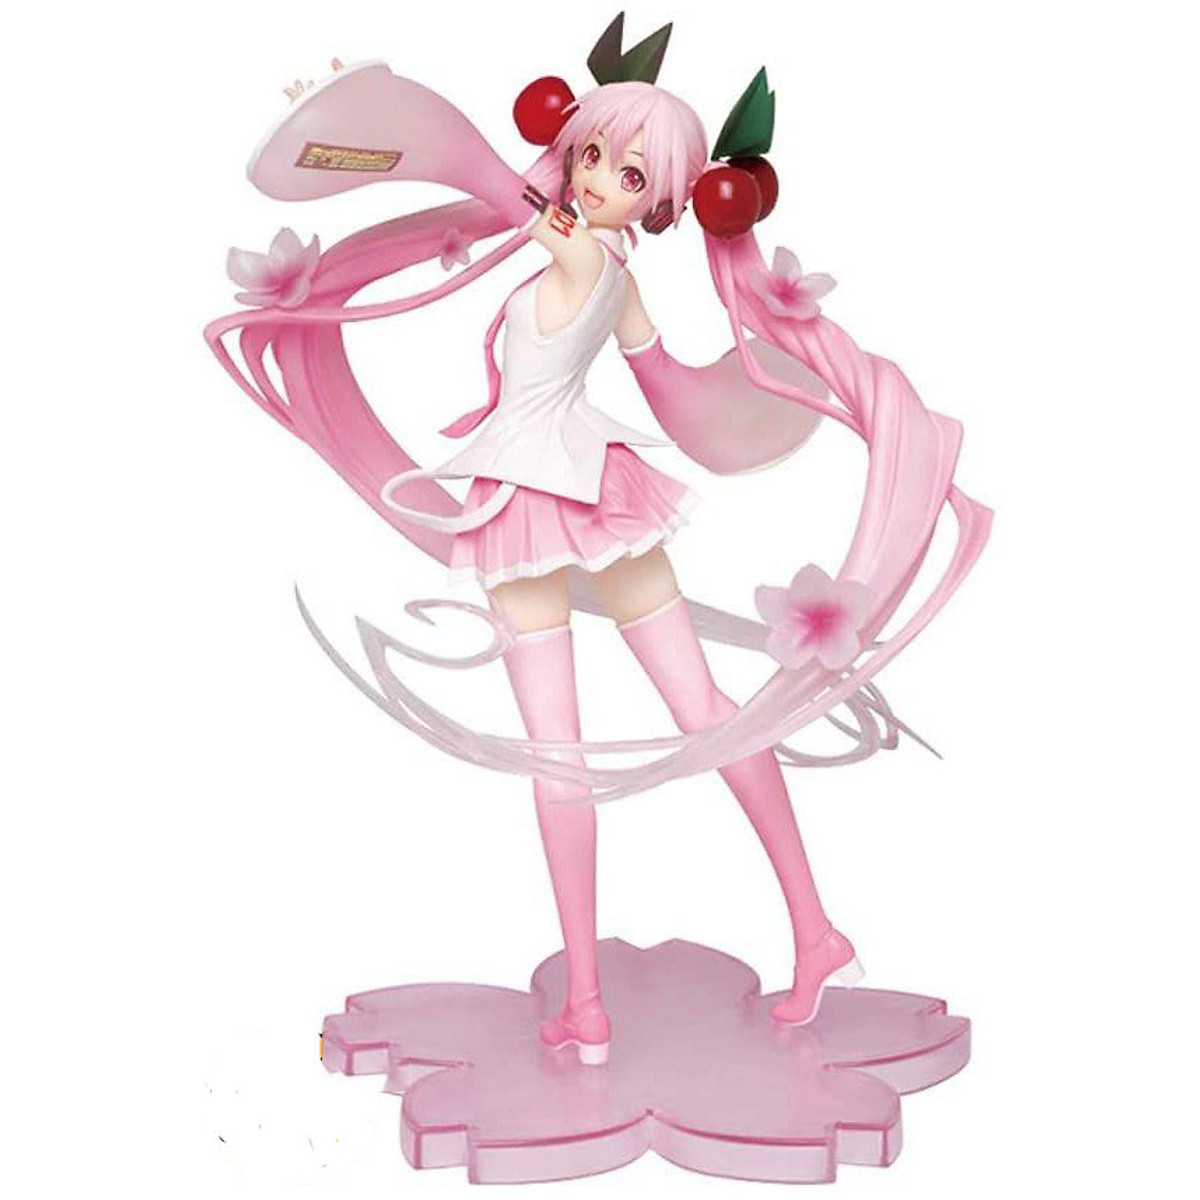 Sega Mô hình nhân vật Vocaloid  Hatsune Miku  SPM Figure  Sakura Ver 2   Đồ chơi trẻ em